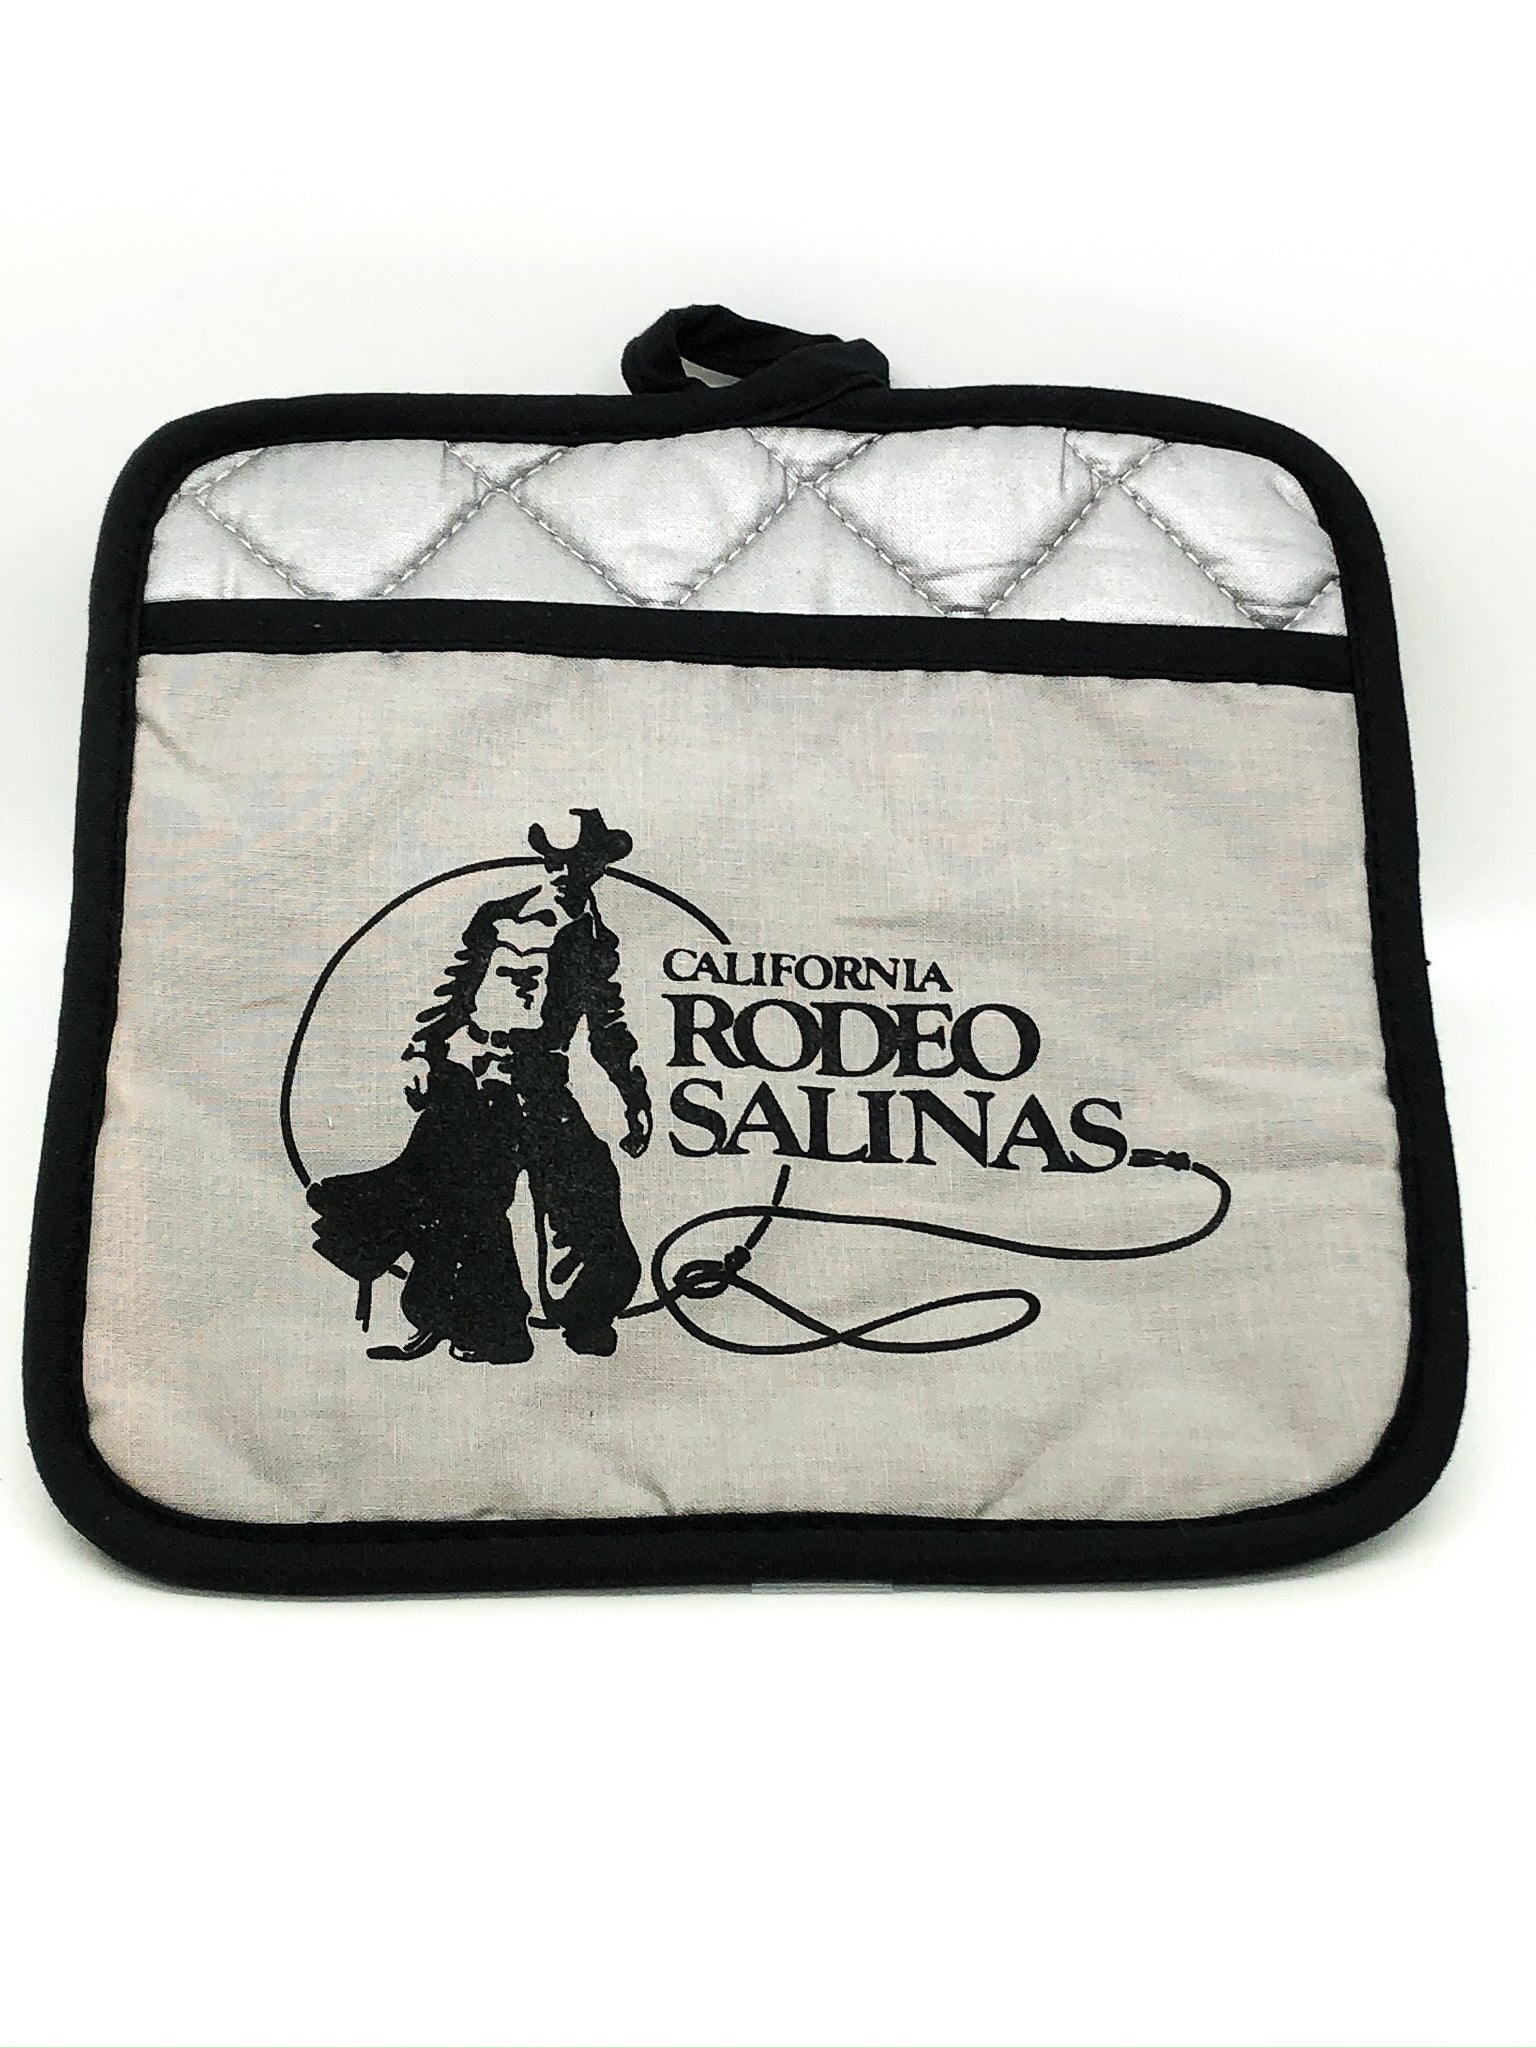 California Rodeo Salinas Pot Holder